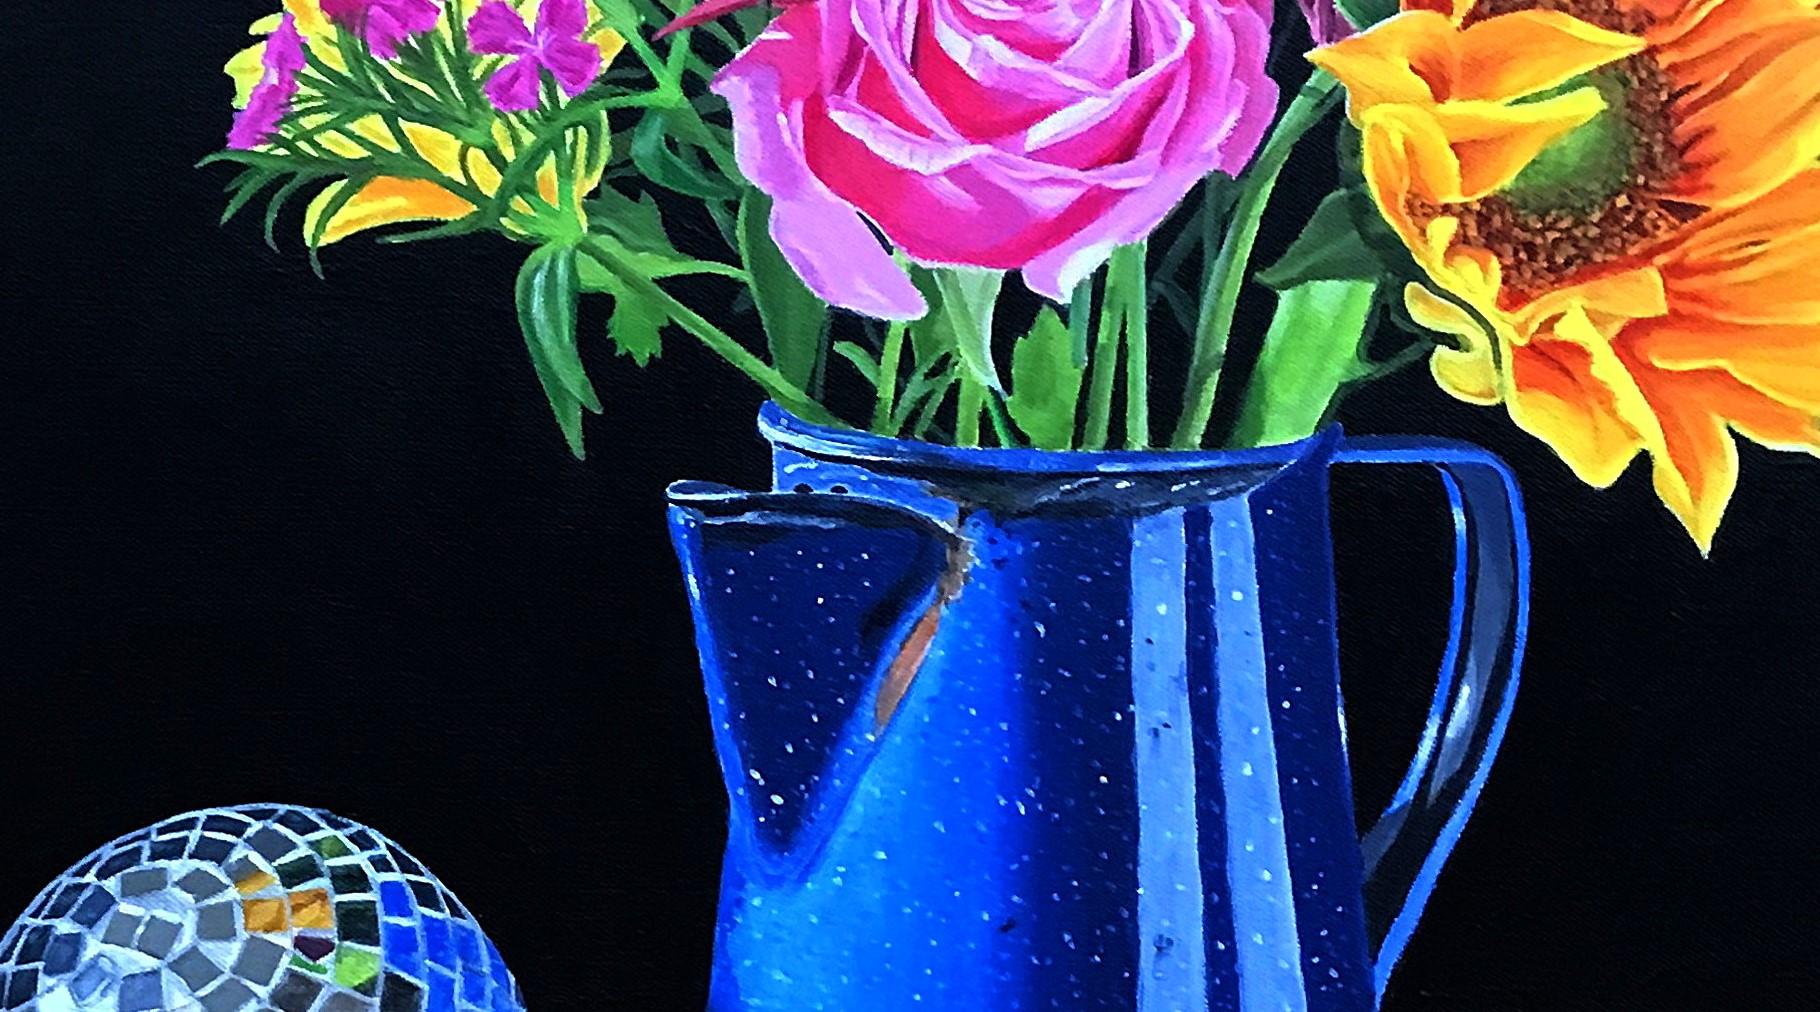 <p>Kommentare des Künstlers<br>Der Künstler John Jaster illustriert ein dramatisches Stillleben in kontrastreichem Realismus. Eine blaue Lagerfeuer-Kaffeekanne im Vintage-Stil treibt ein dynamisches Arrangement aus bunten Blumen aus. Daneben